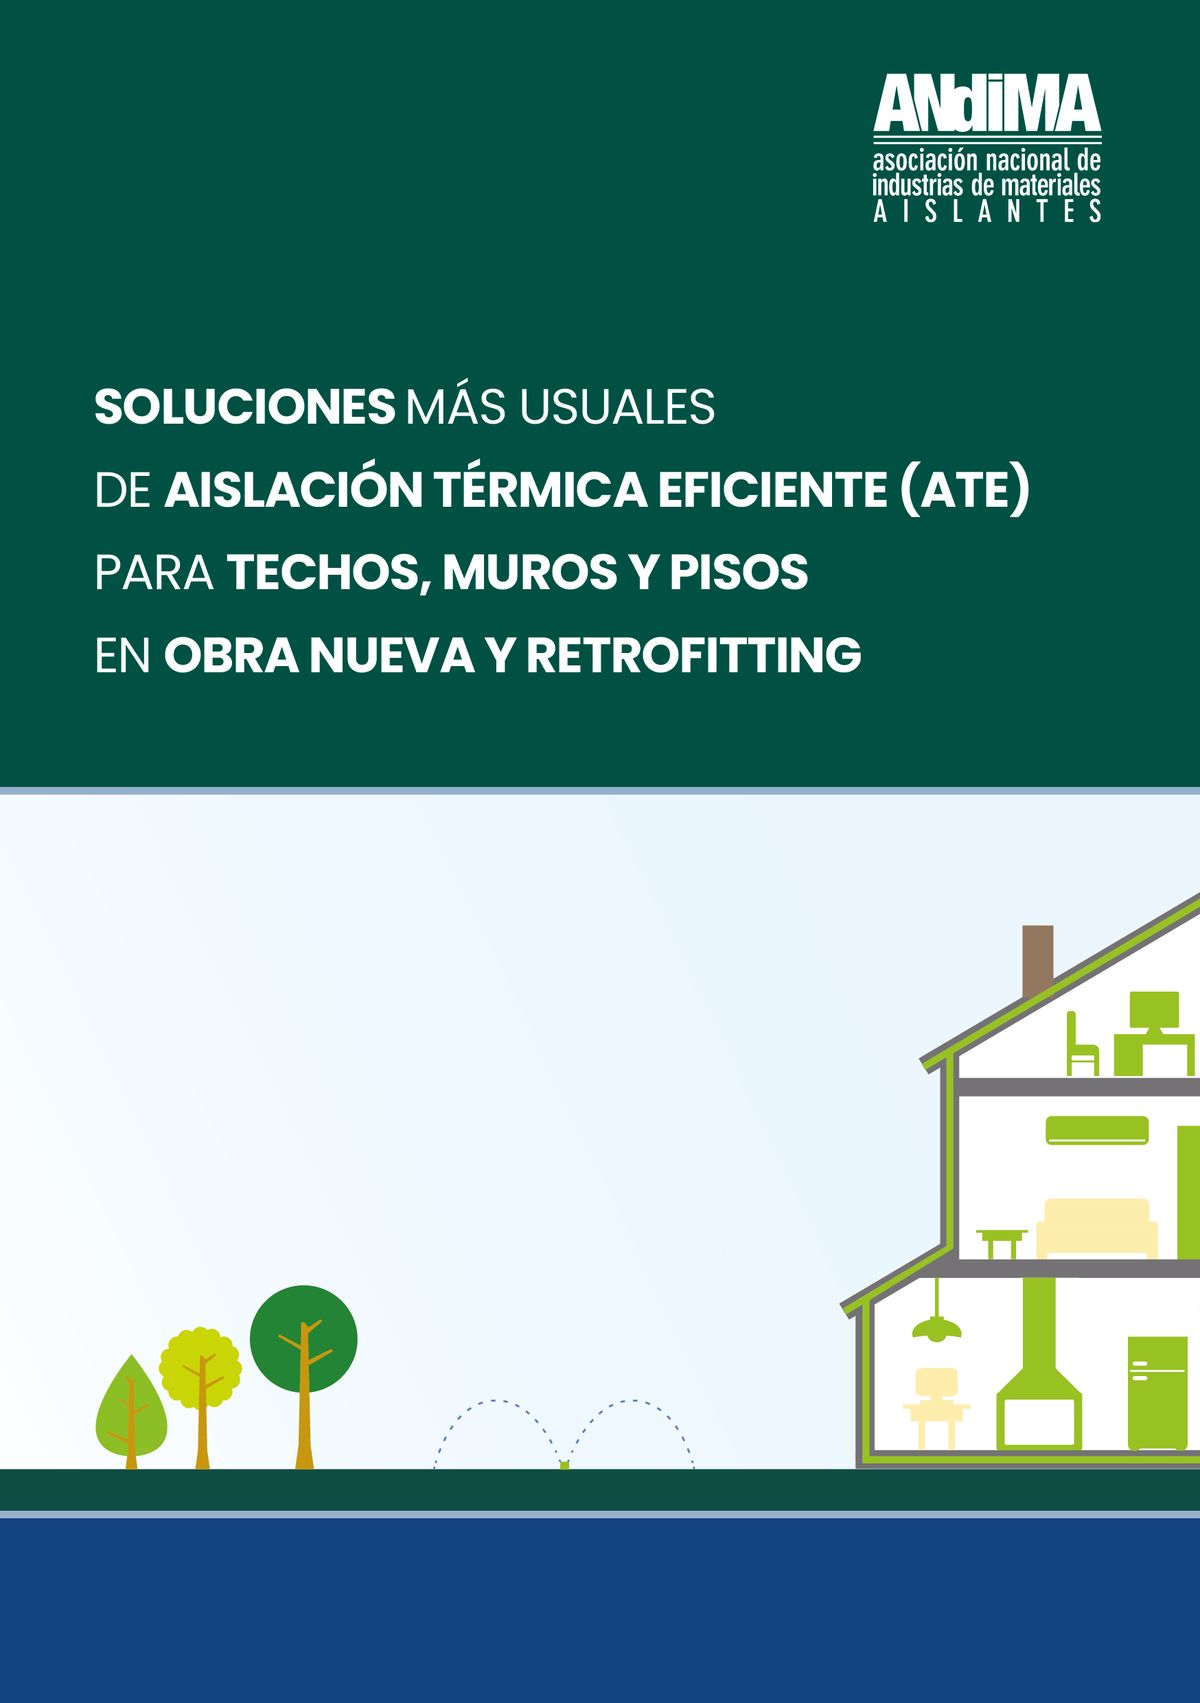 Eficiencia energética: primer manual sobre soluciones y usos de aislación térmica eficiente